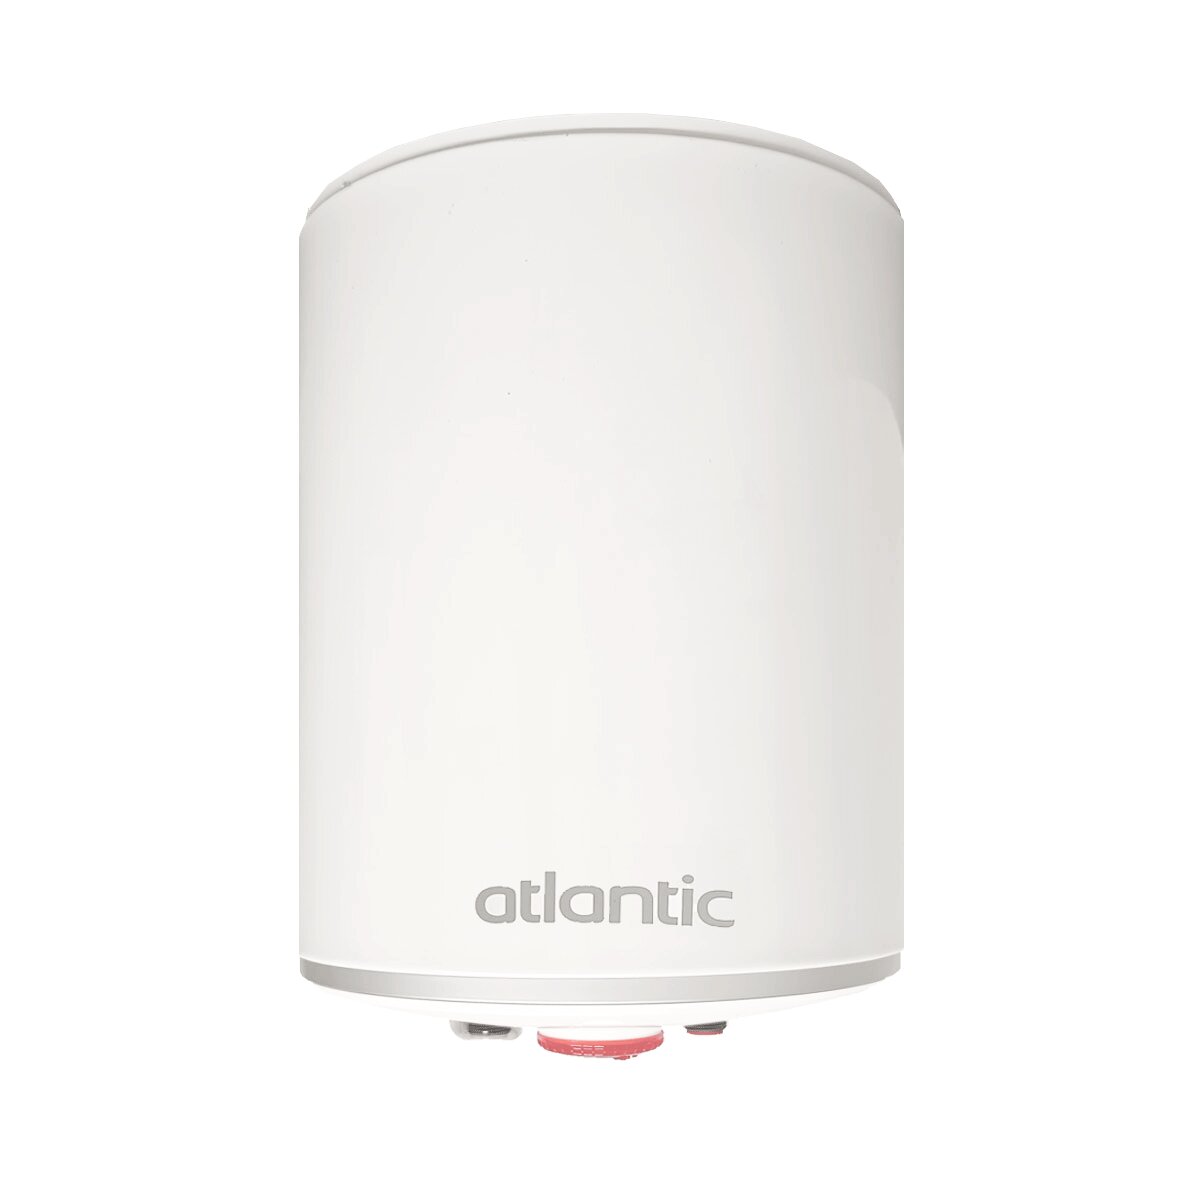 EGO Atlantic 10 Liter Schnell-Übertisch-Elektro-Warmwasserbereiter, 2 Jahre Garantie